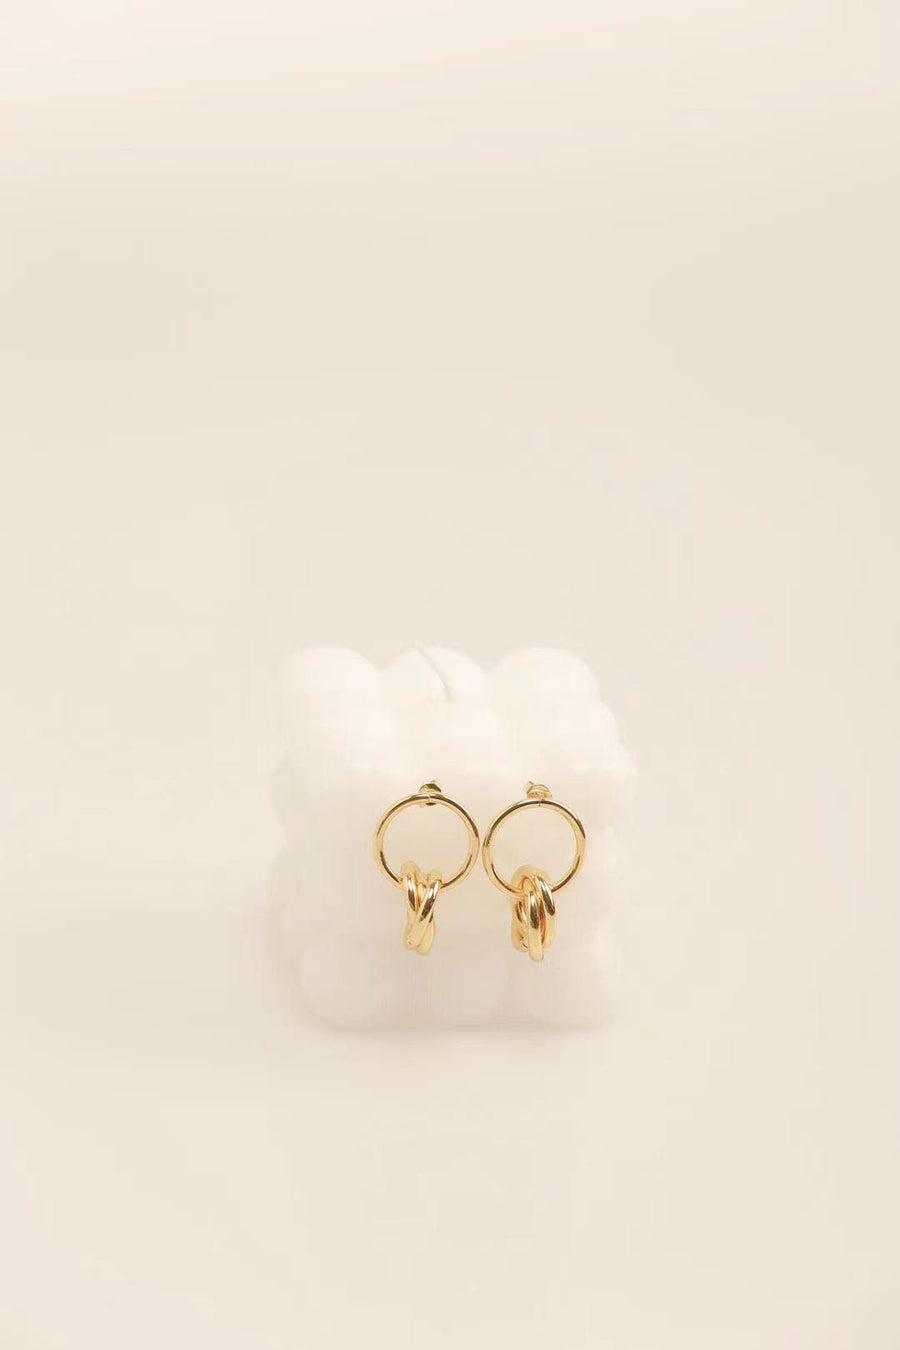 Gold Circle Minimalist Hoop Earrings.